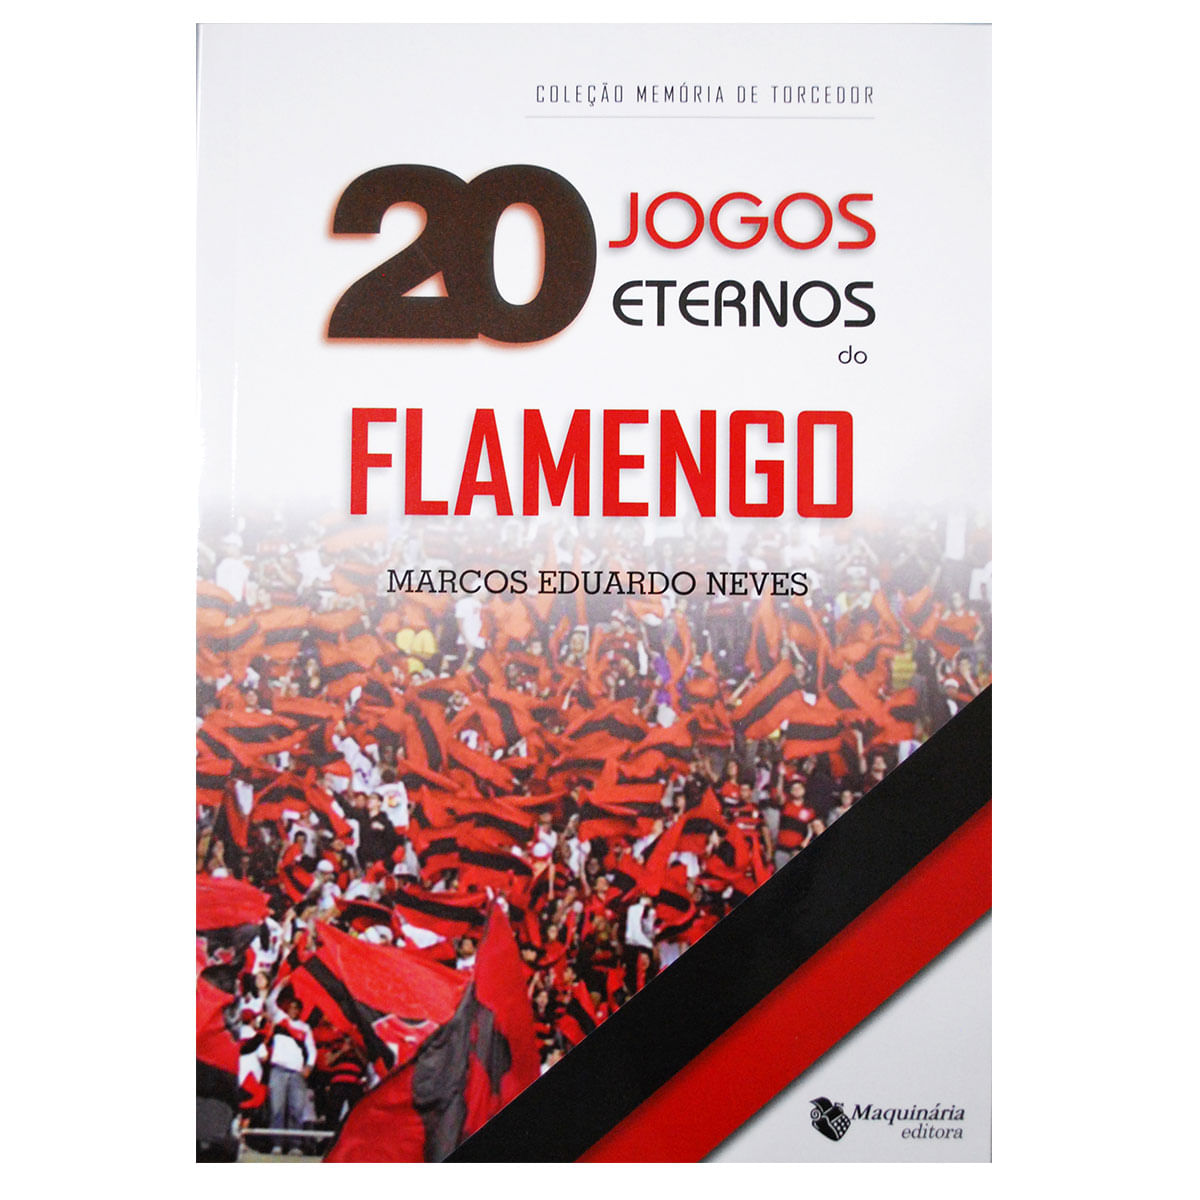 20 JOGOS ETERNOS DO FLAMENGO